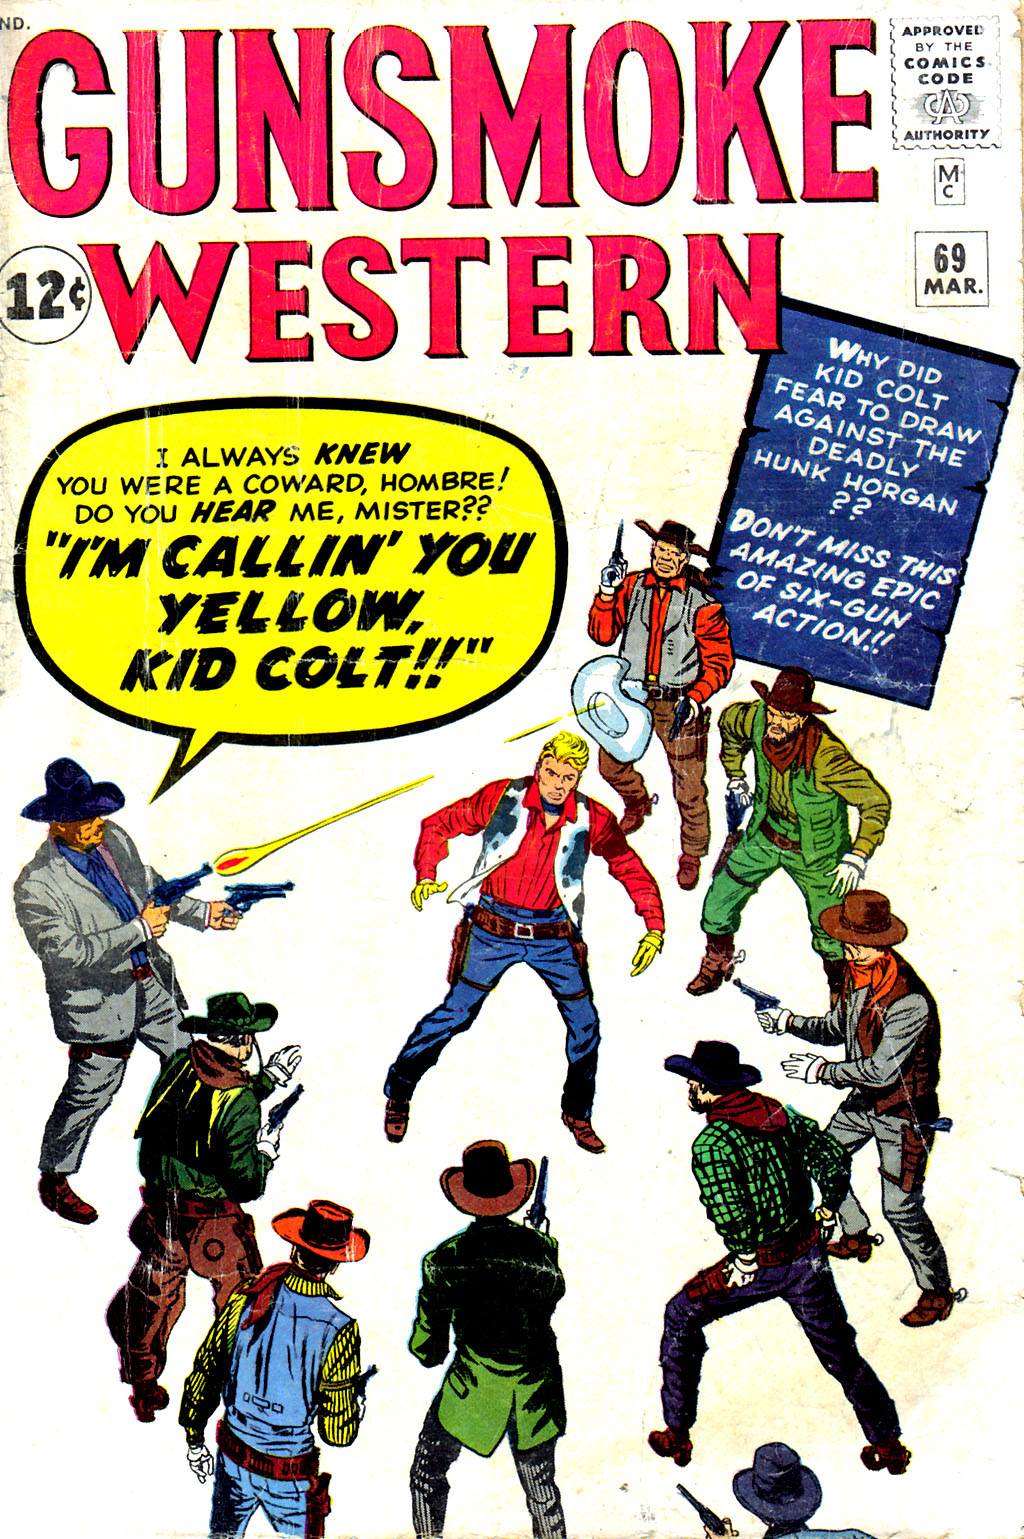 Read online Gunsmoke Western comic -  Issue #69 - 1